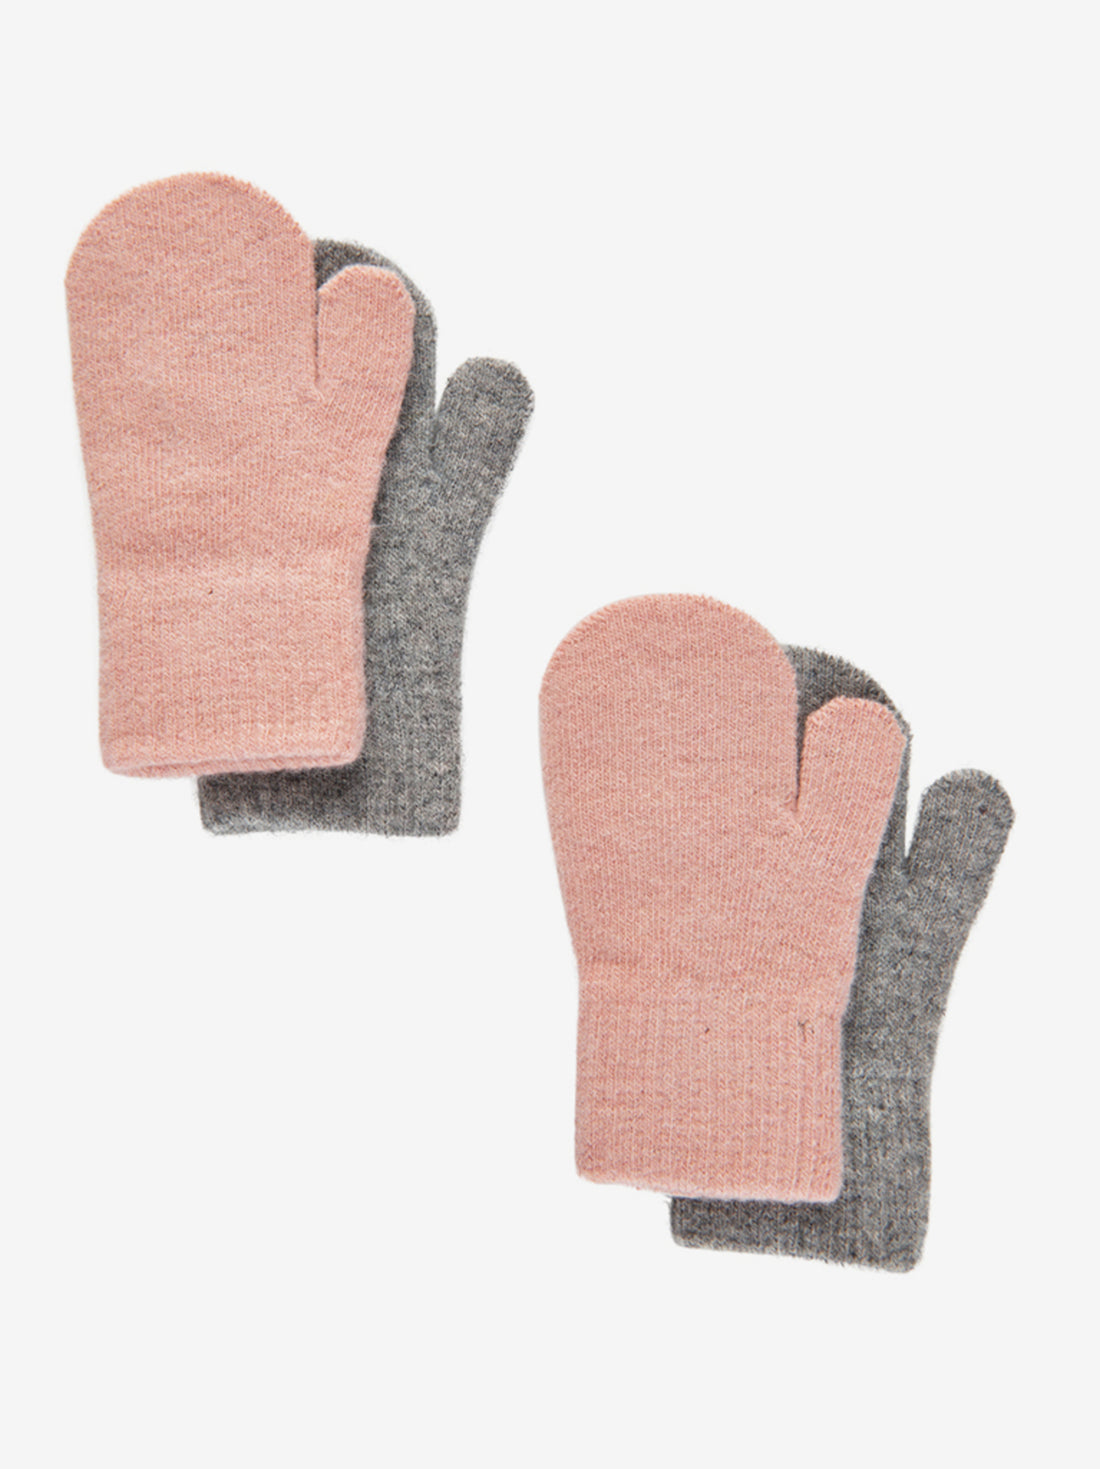 Praktische 2er-Pack Handschuhe aus Wolle mit Rippbündchen an den Handgelenken.